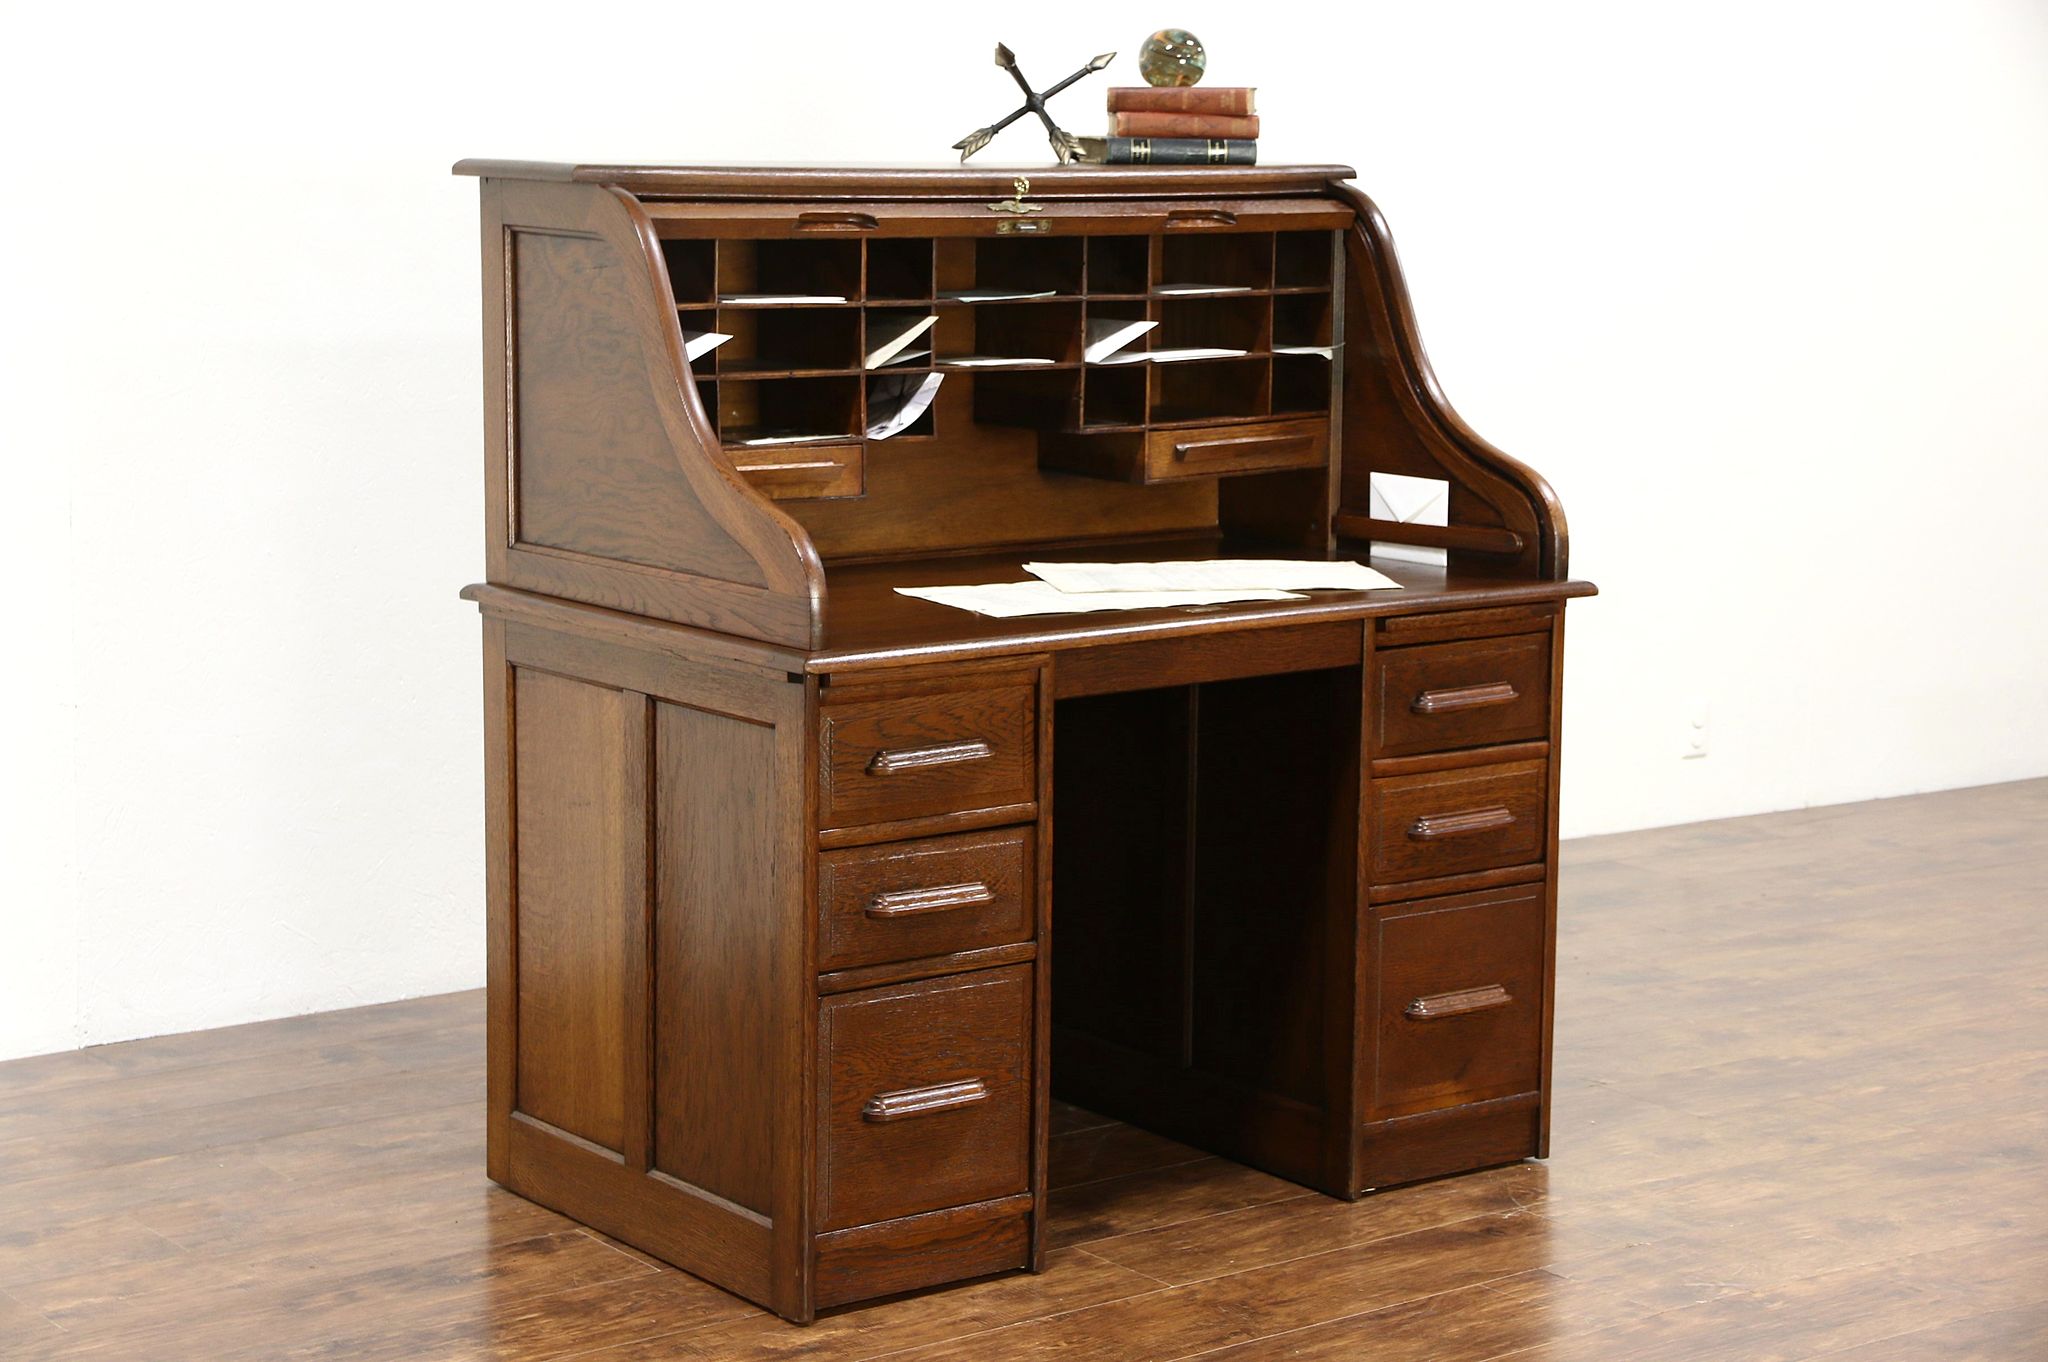 Sold Oak S Curve 1895 Antique Rolltop Desk Signed Tebbit Of